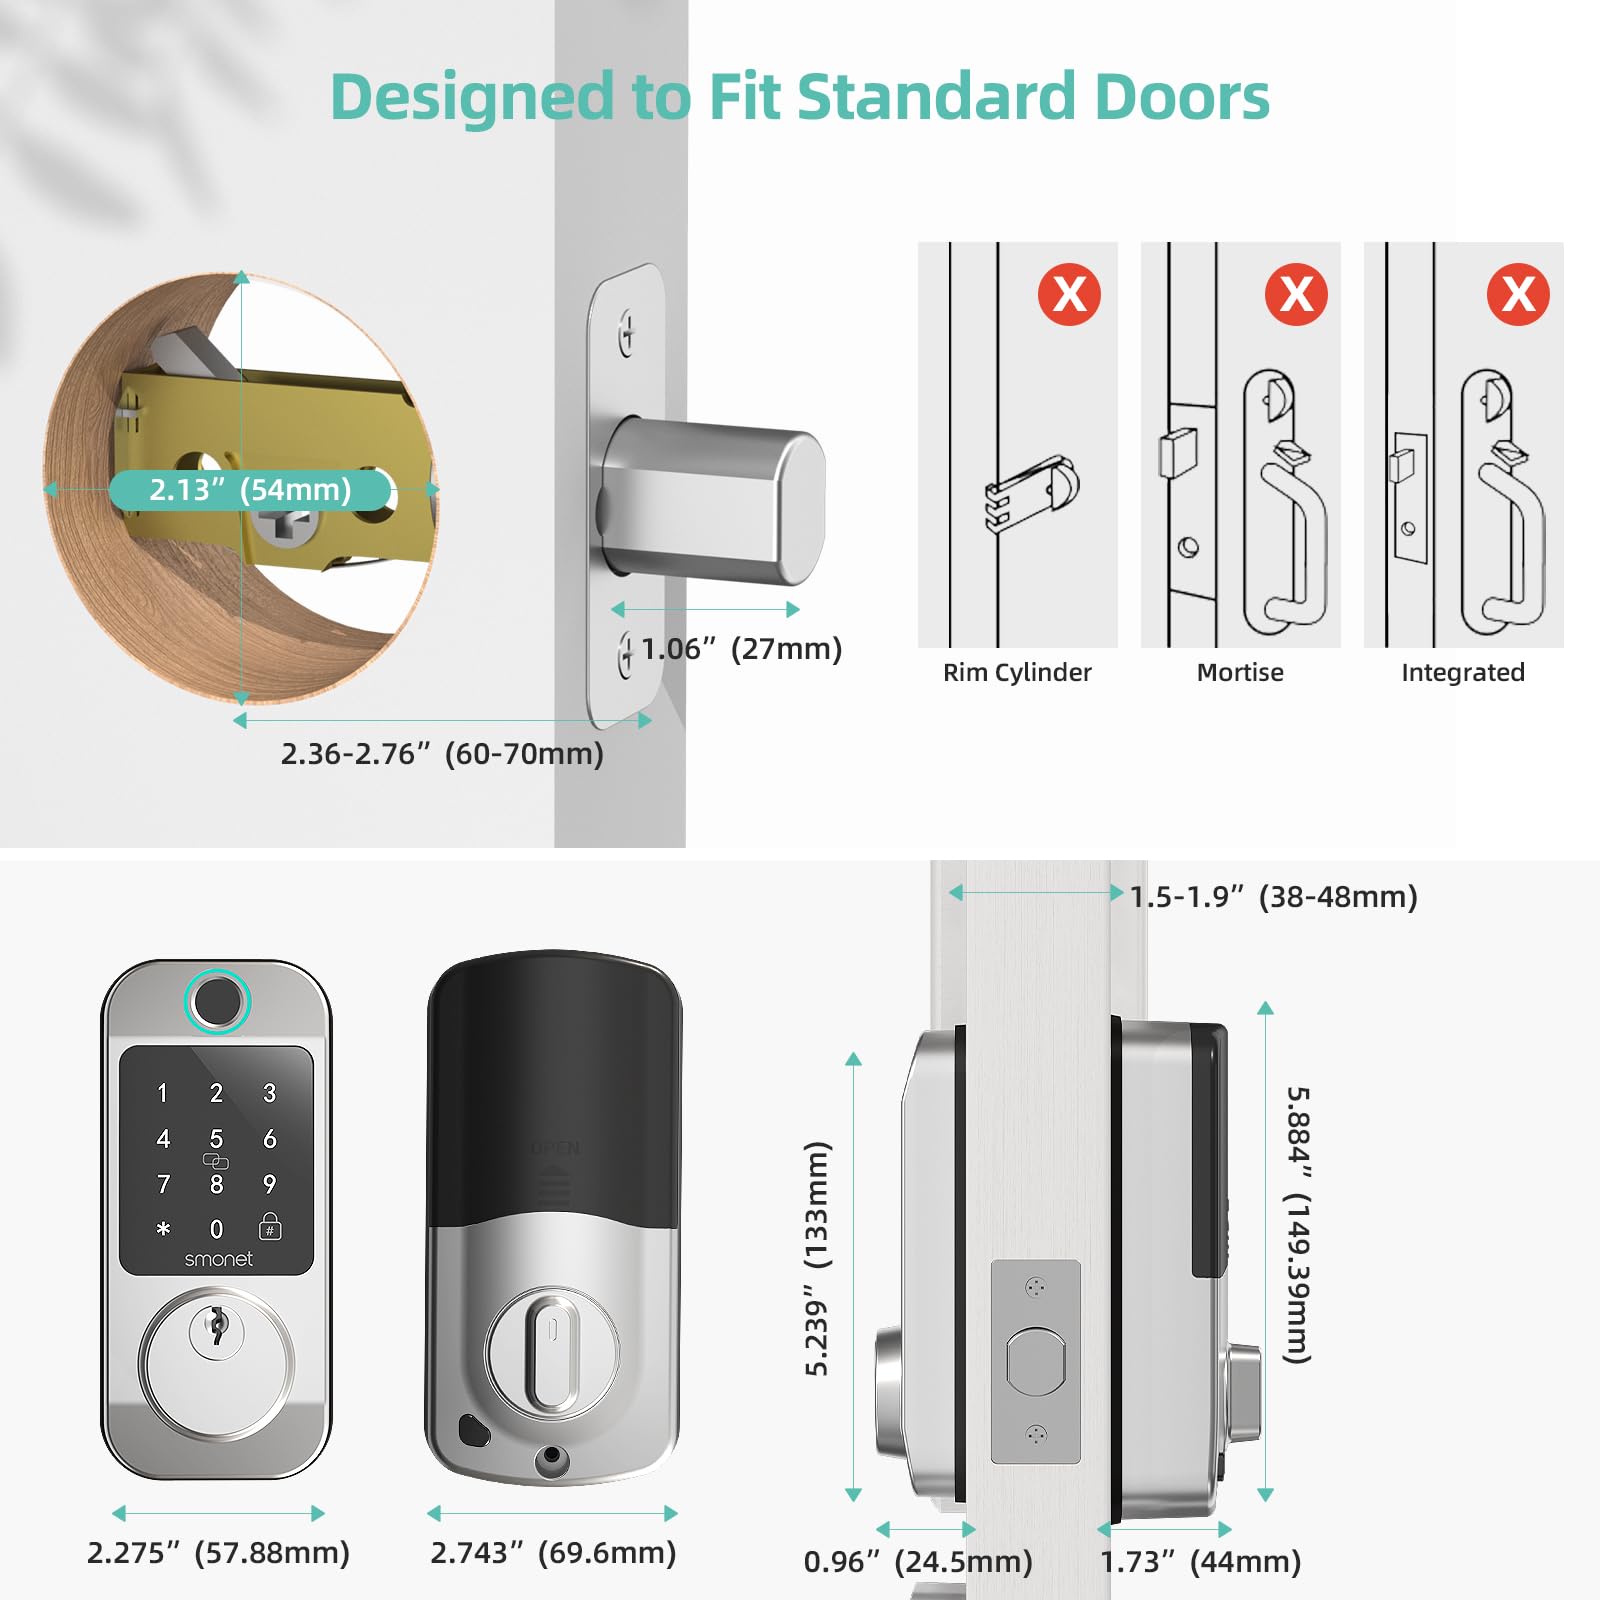 Satin Nickel-Designed to Fit Standard Doors